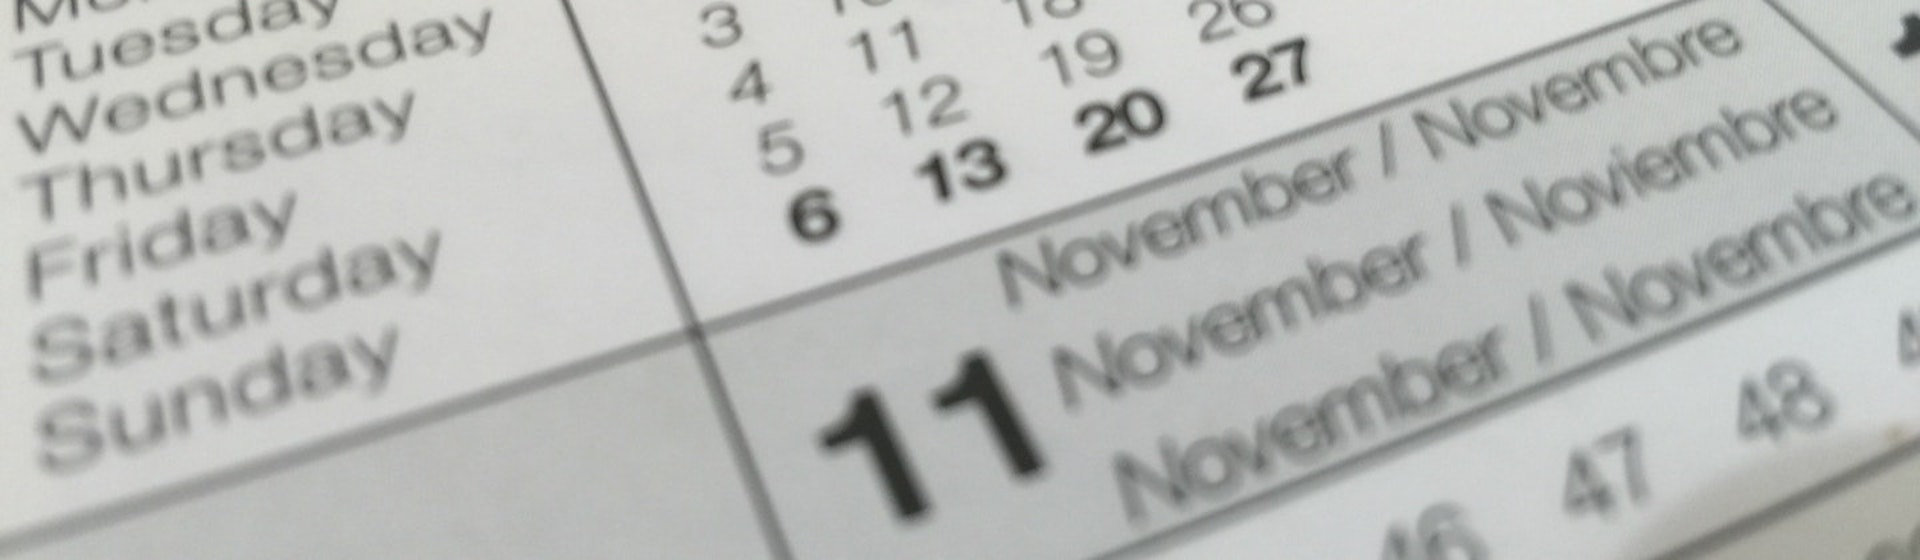 ¿Cómo escribir la fecha en inglés sin entrar en pánico al ver el calendario?